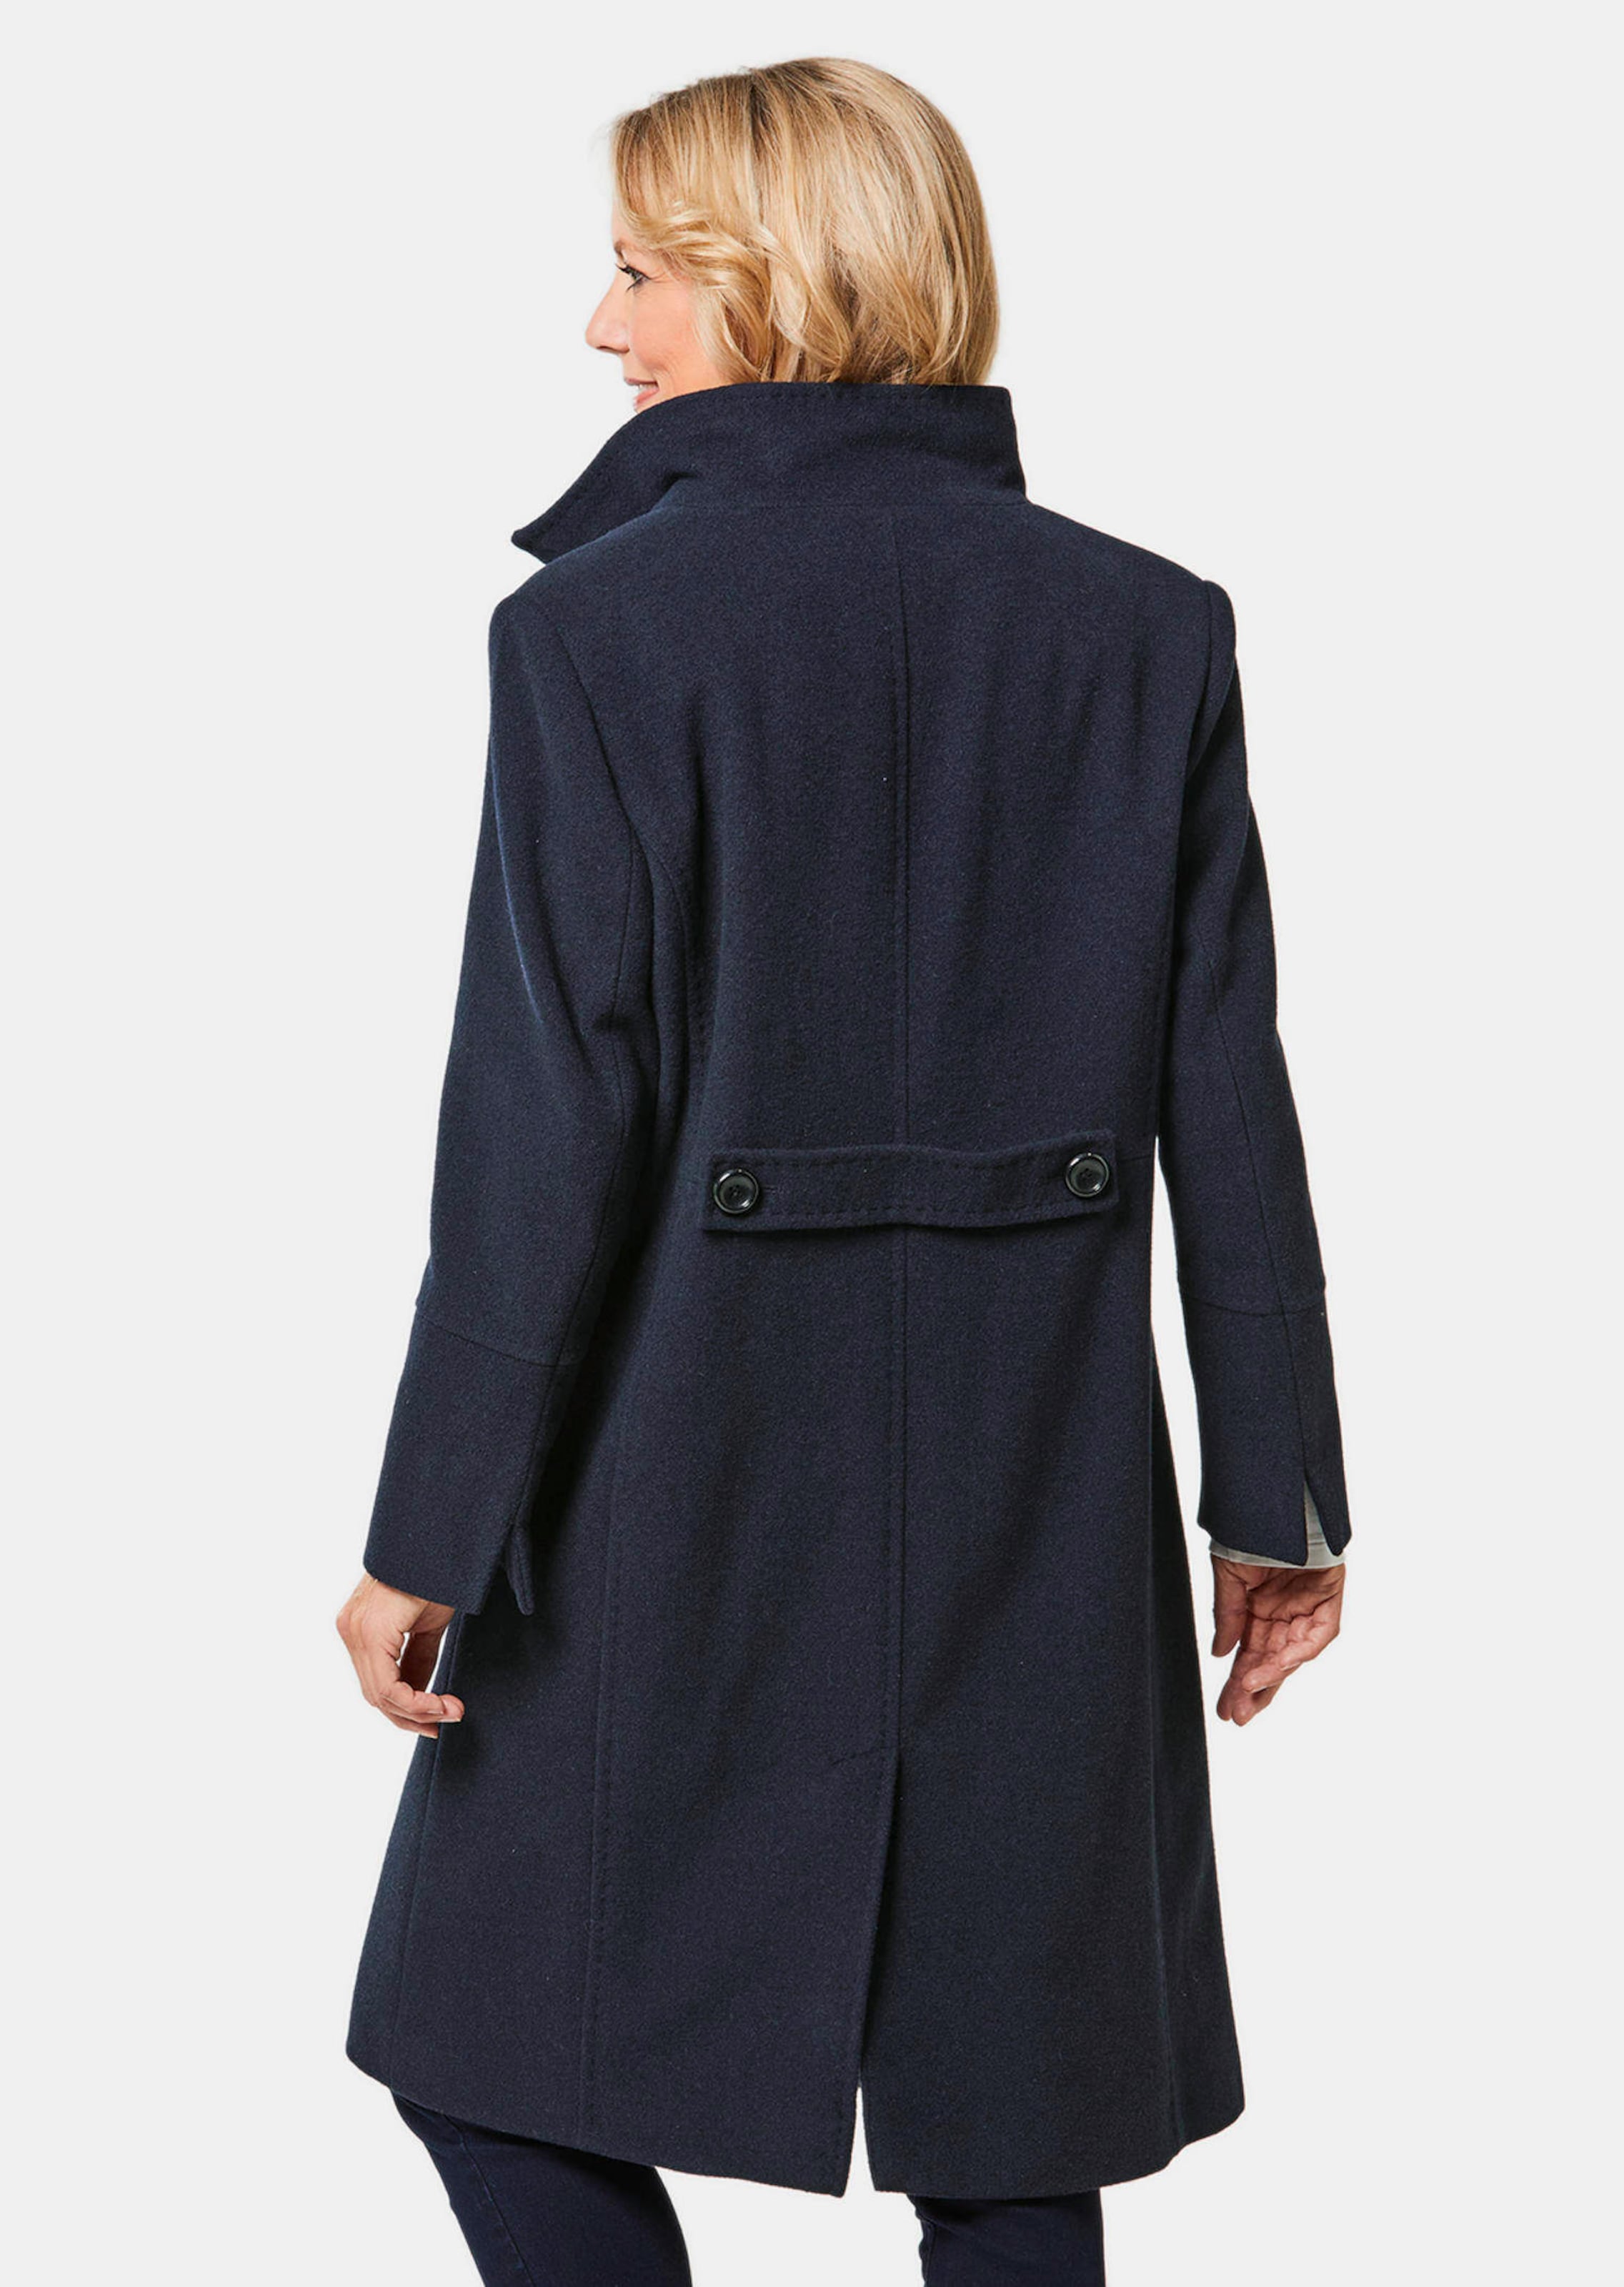 Manteau en laine - marine - Gr. 38 de Goldner Fashion